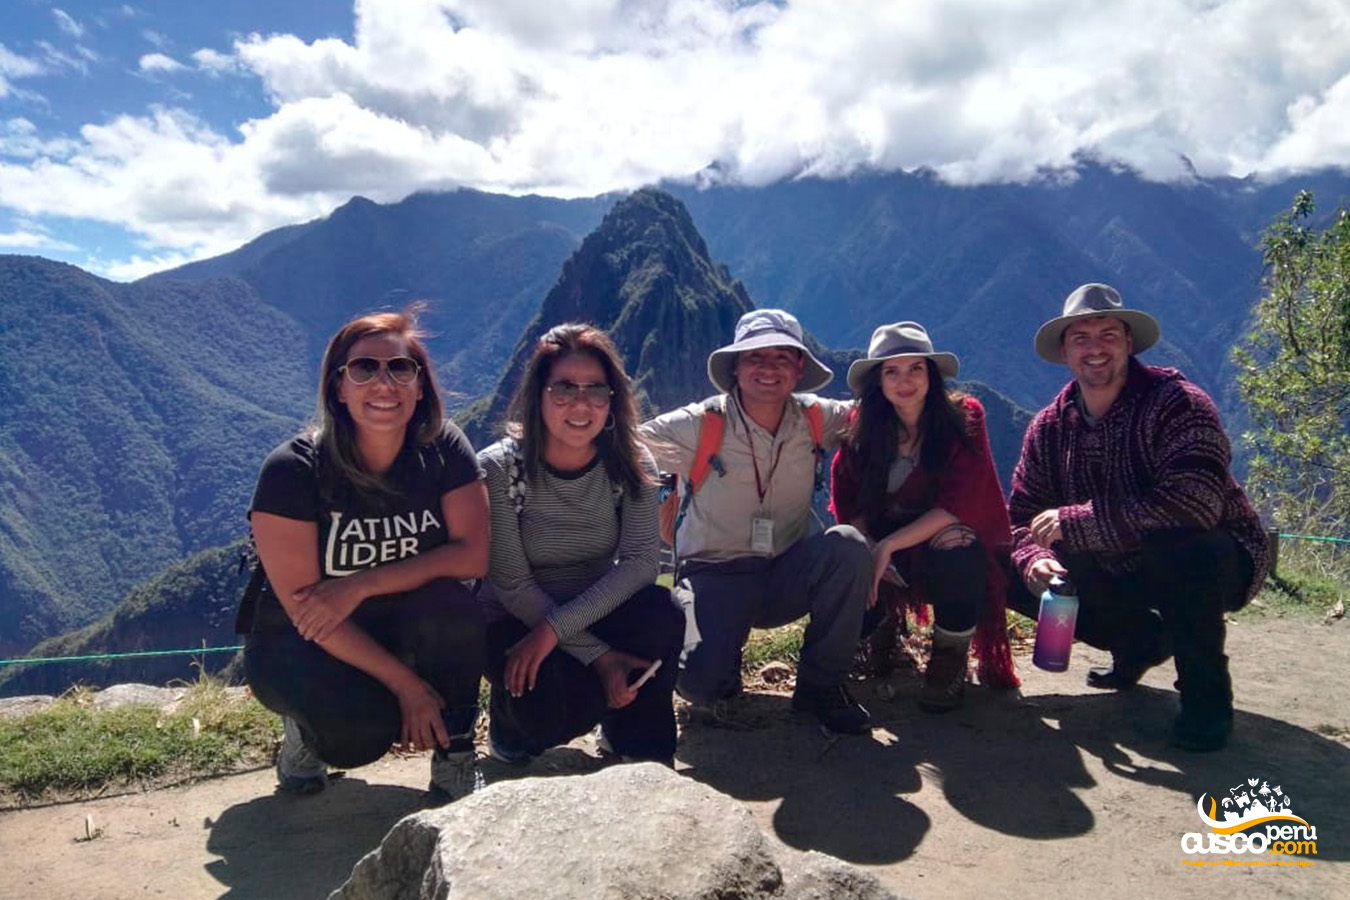 Guía de turismo con un grupo de turistas en Machu Picchu. Fuente: CuscoPeru.com